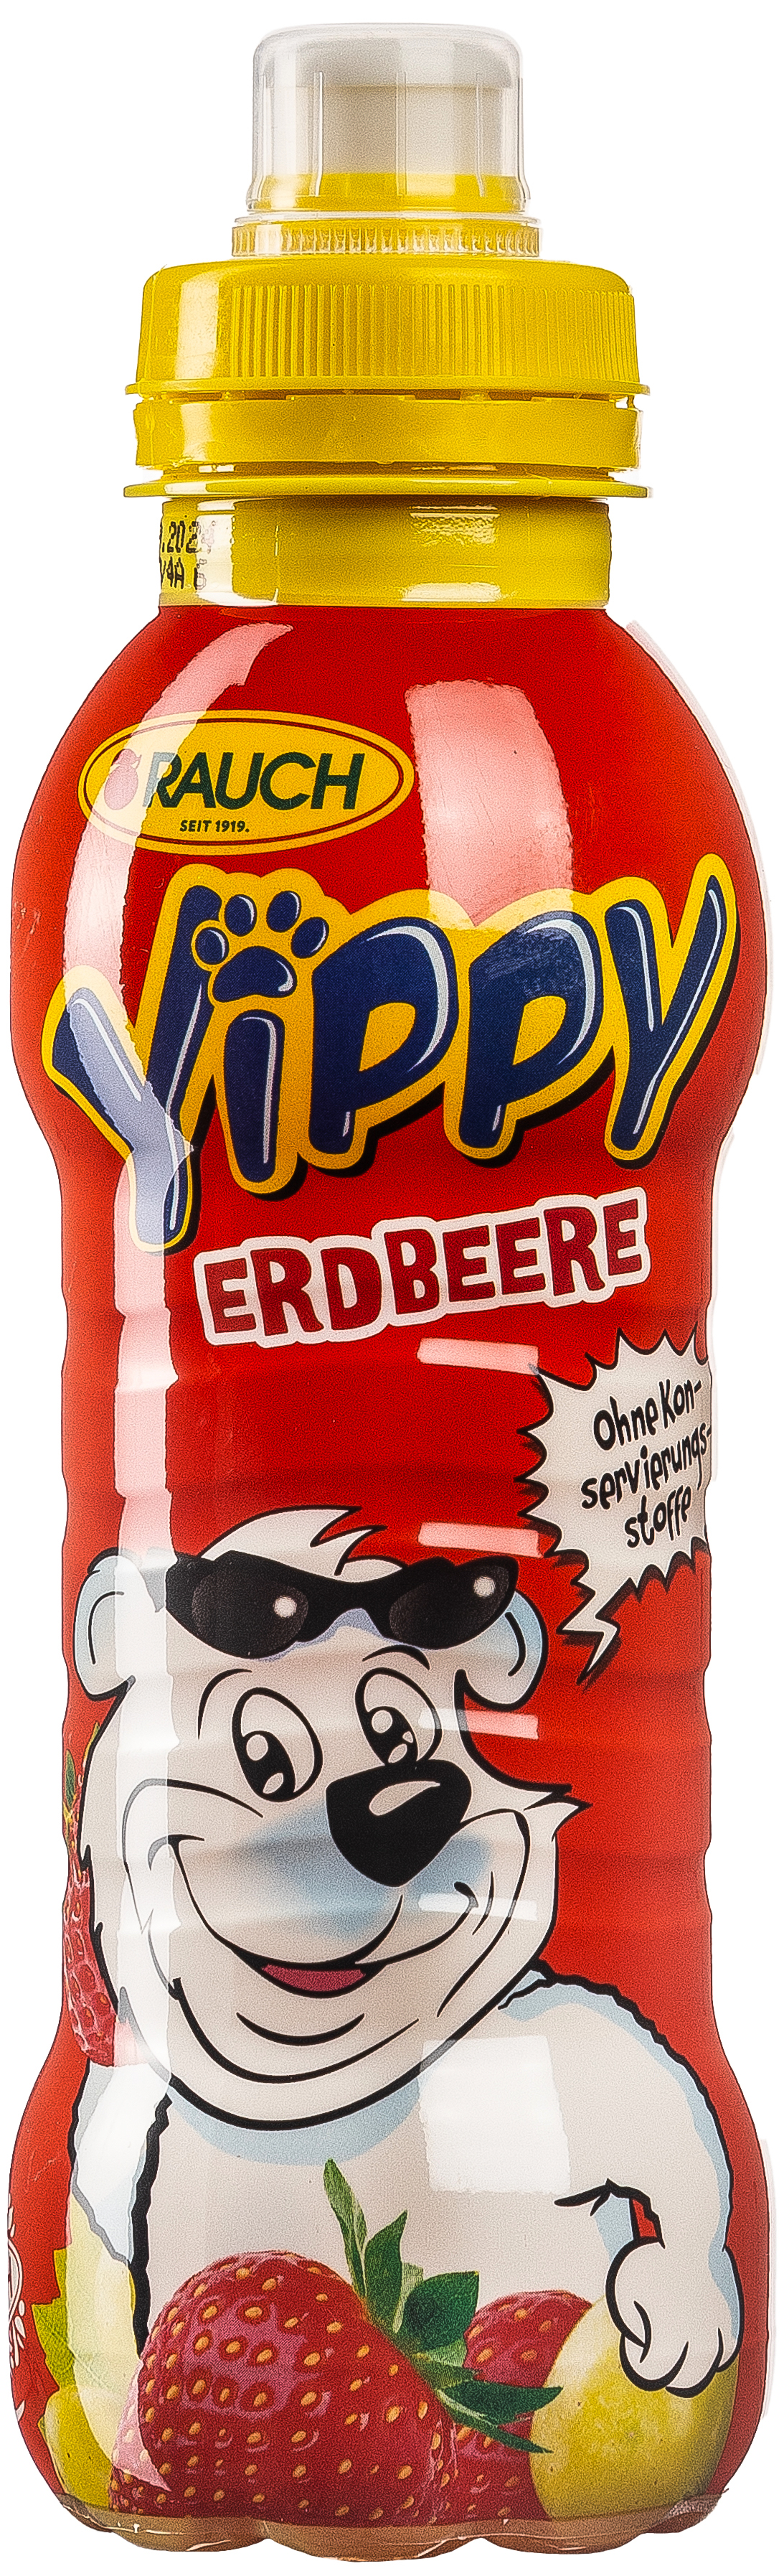 Yippy Erdbeere 0,33L EINWEG